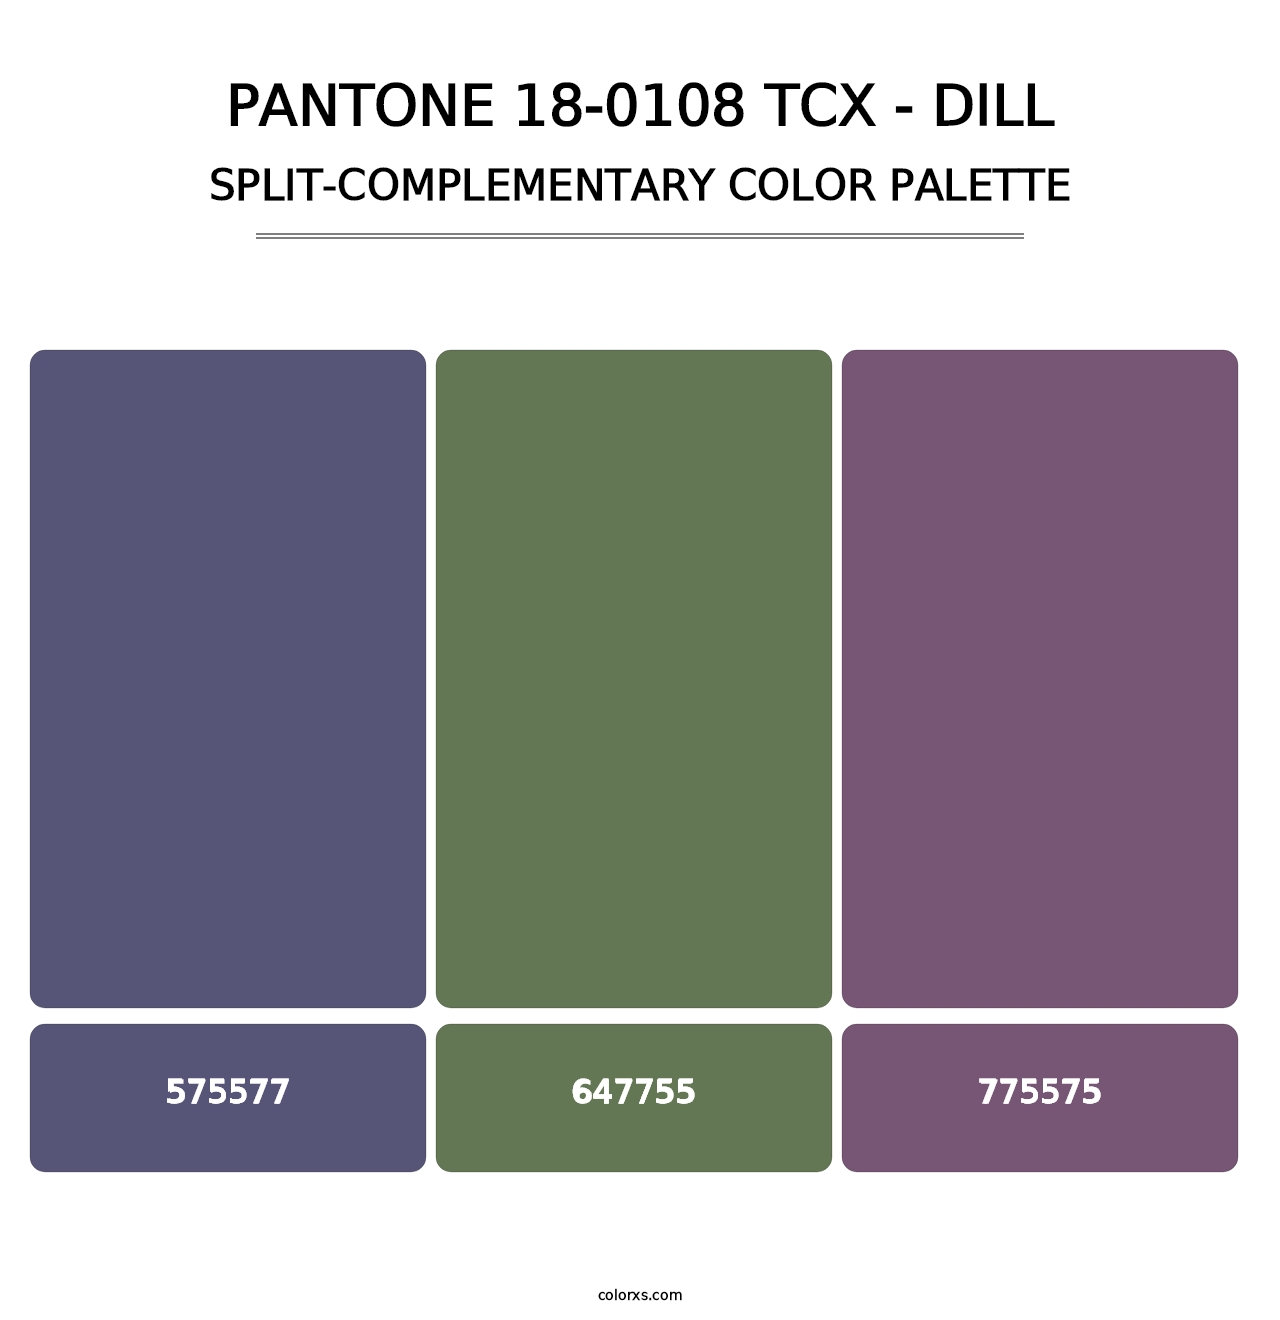 PANTONE 18-0108 TCX - Dill - Split-Complementary Color Palette